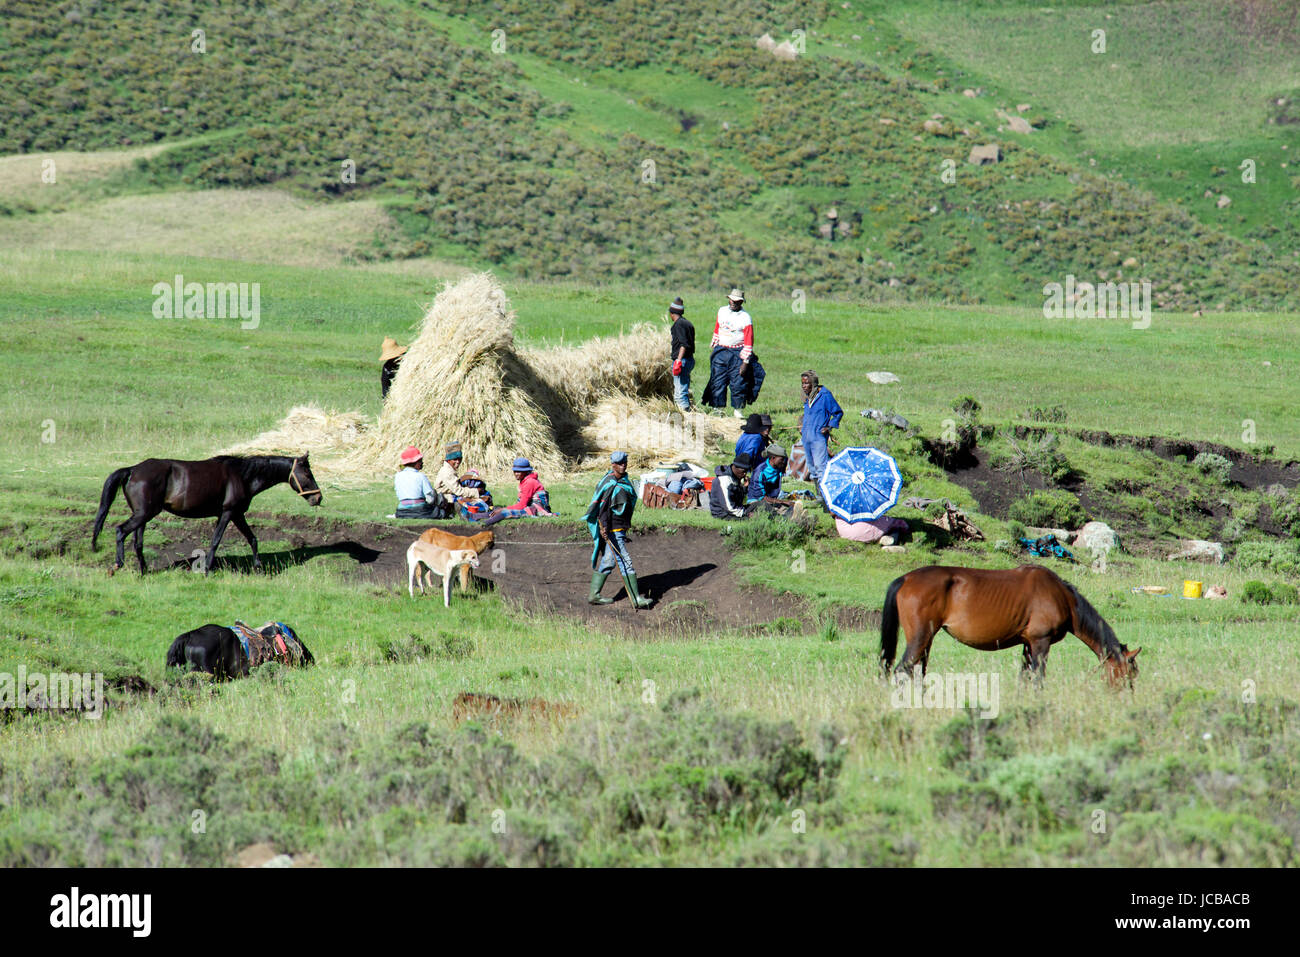 Scène rurale des hautes terres centrales villageois haystack Lesotho Afrique du Sud Banque D'Images